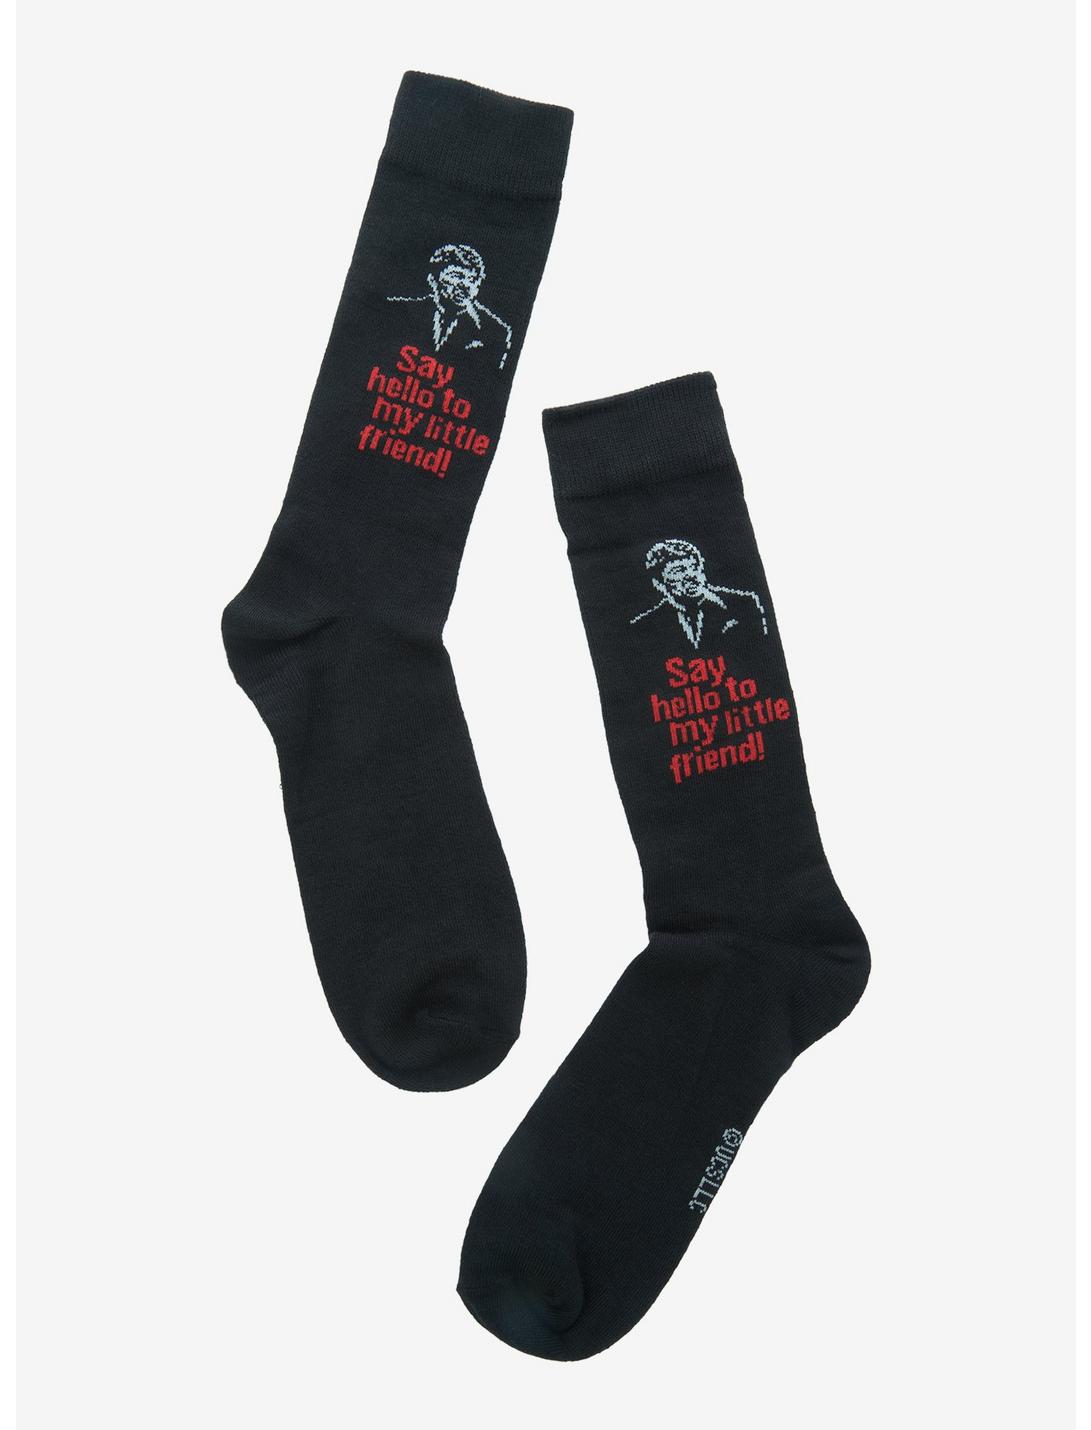 Scarface Tony Montana Quote Crew Socks | Hot Topic